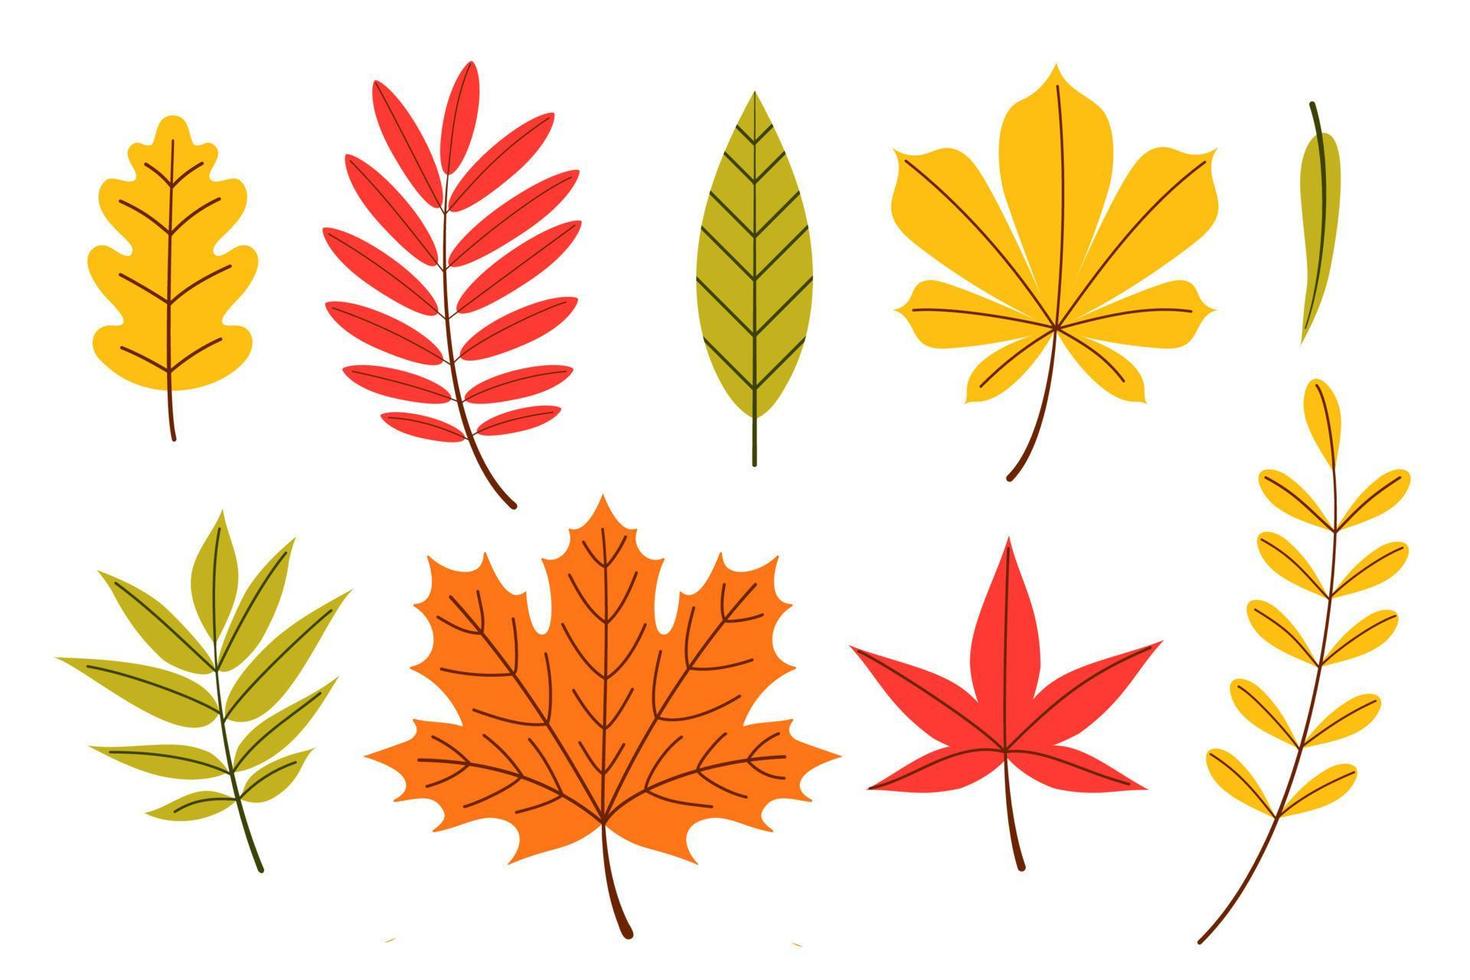 Herbstblätter gesetzt, Vektorillustration im flachen Cartoon-Stil vektor